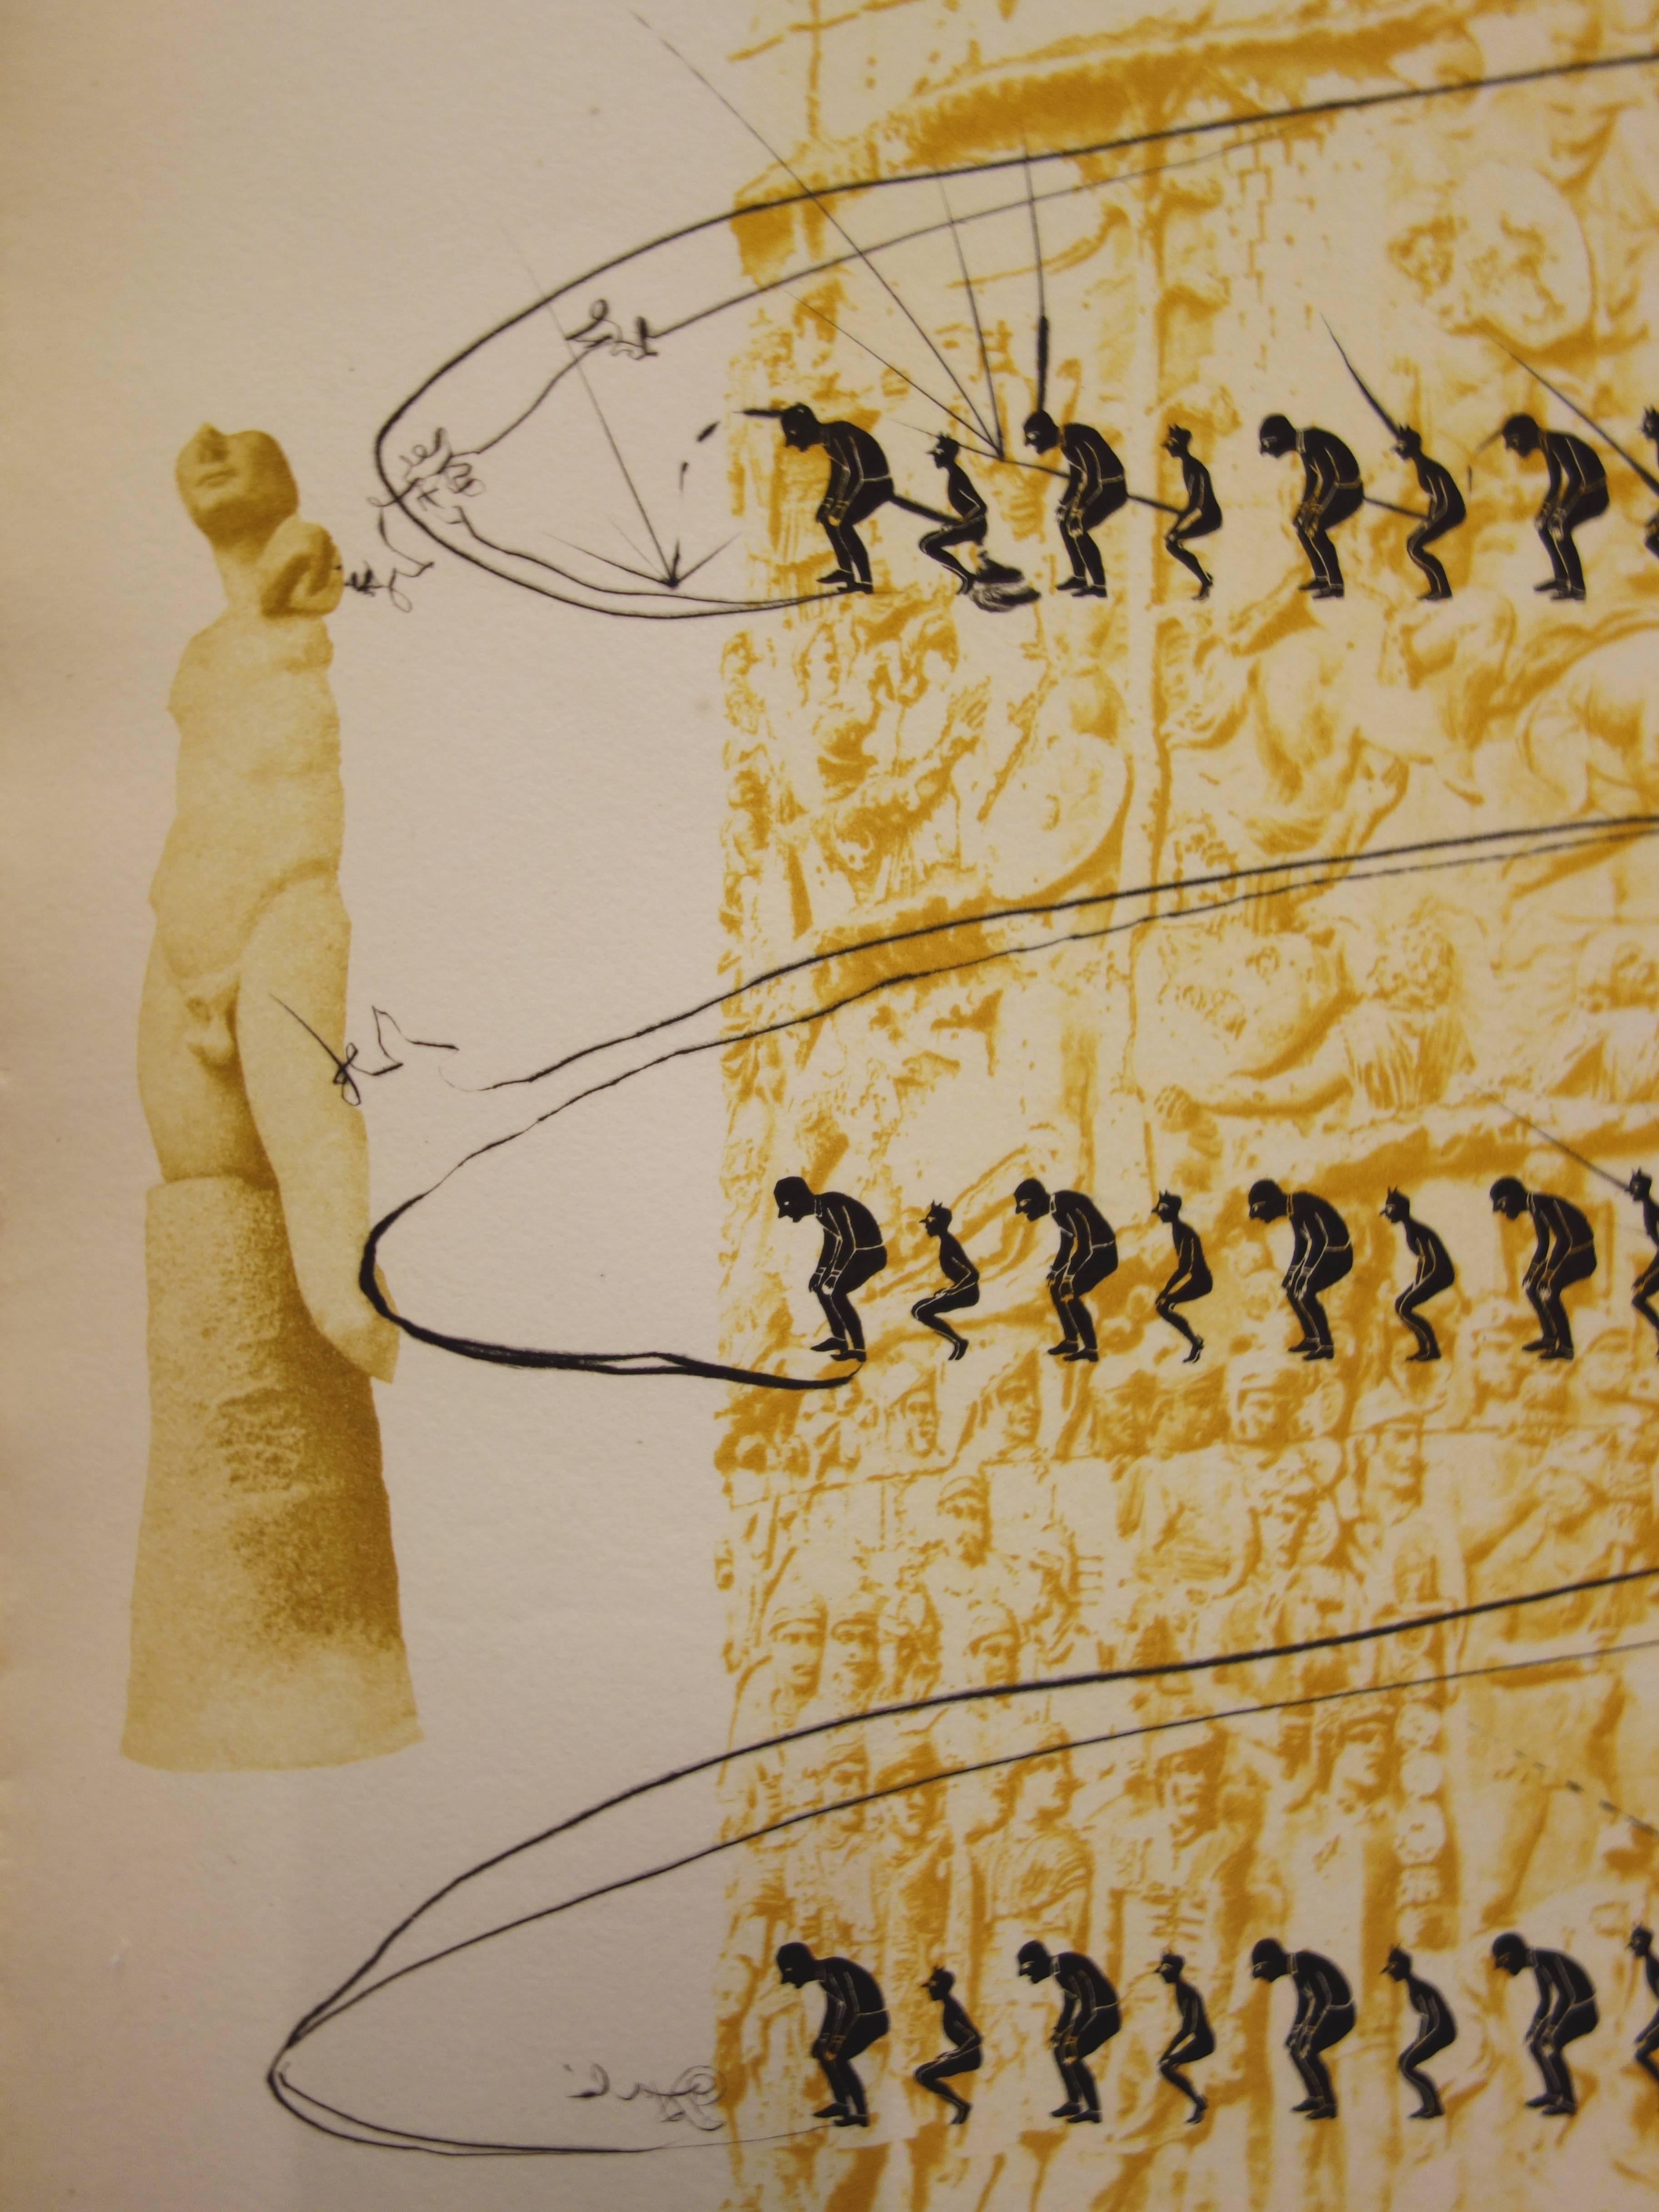 Le système caga y menja - Original etching - 1973 - Brown Figurative Print by Salvador Dalí